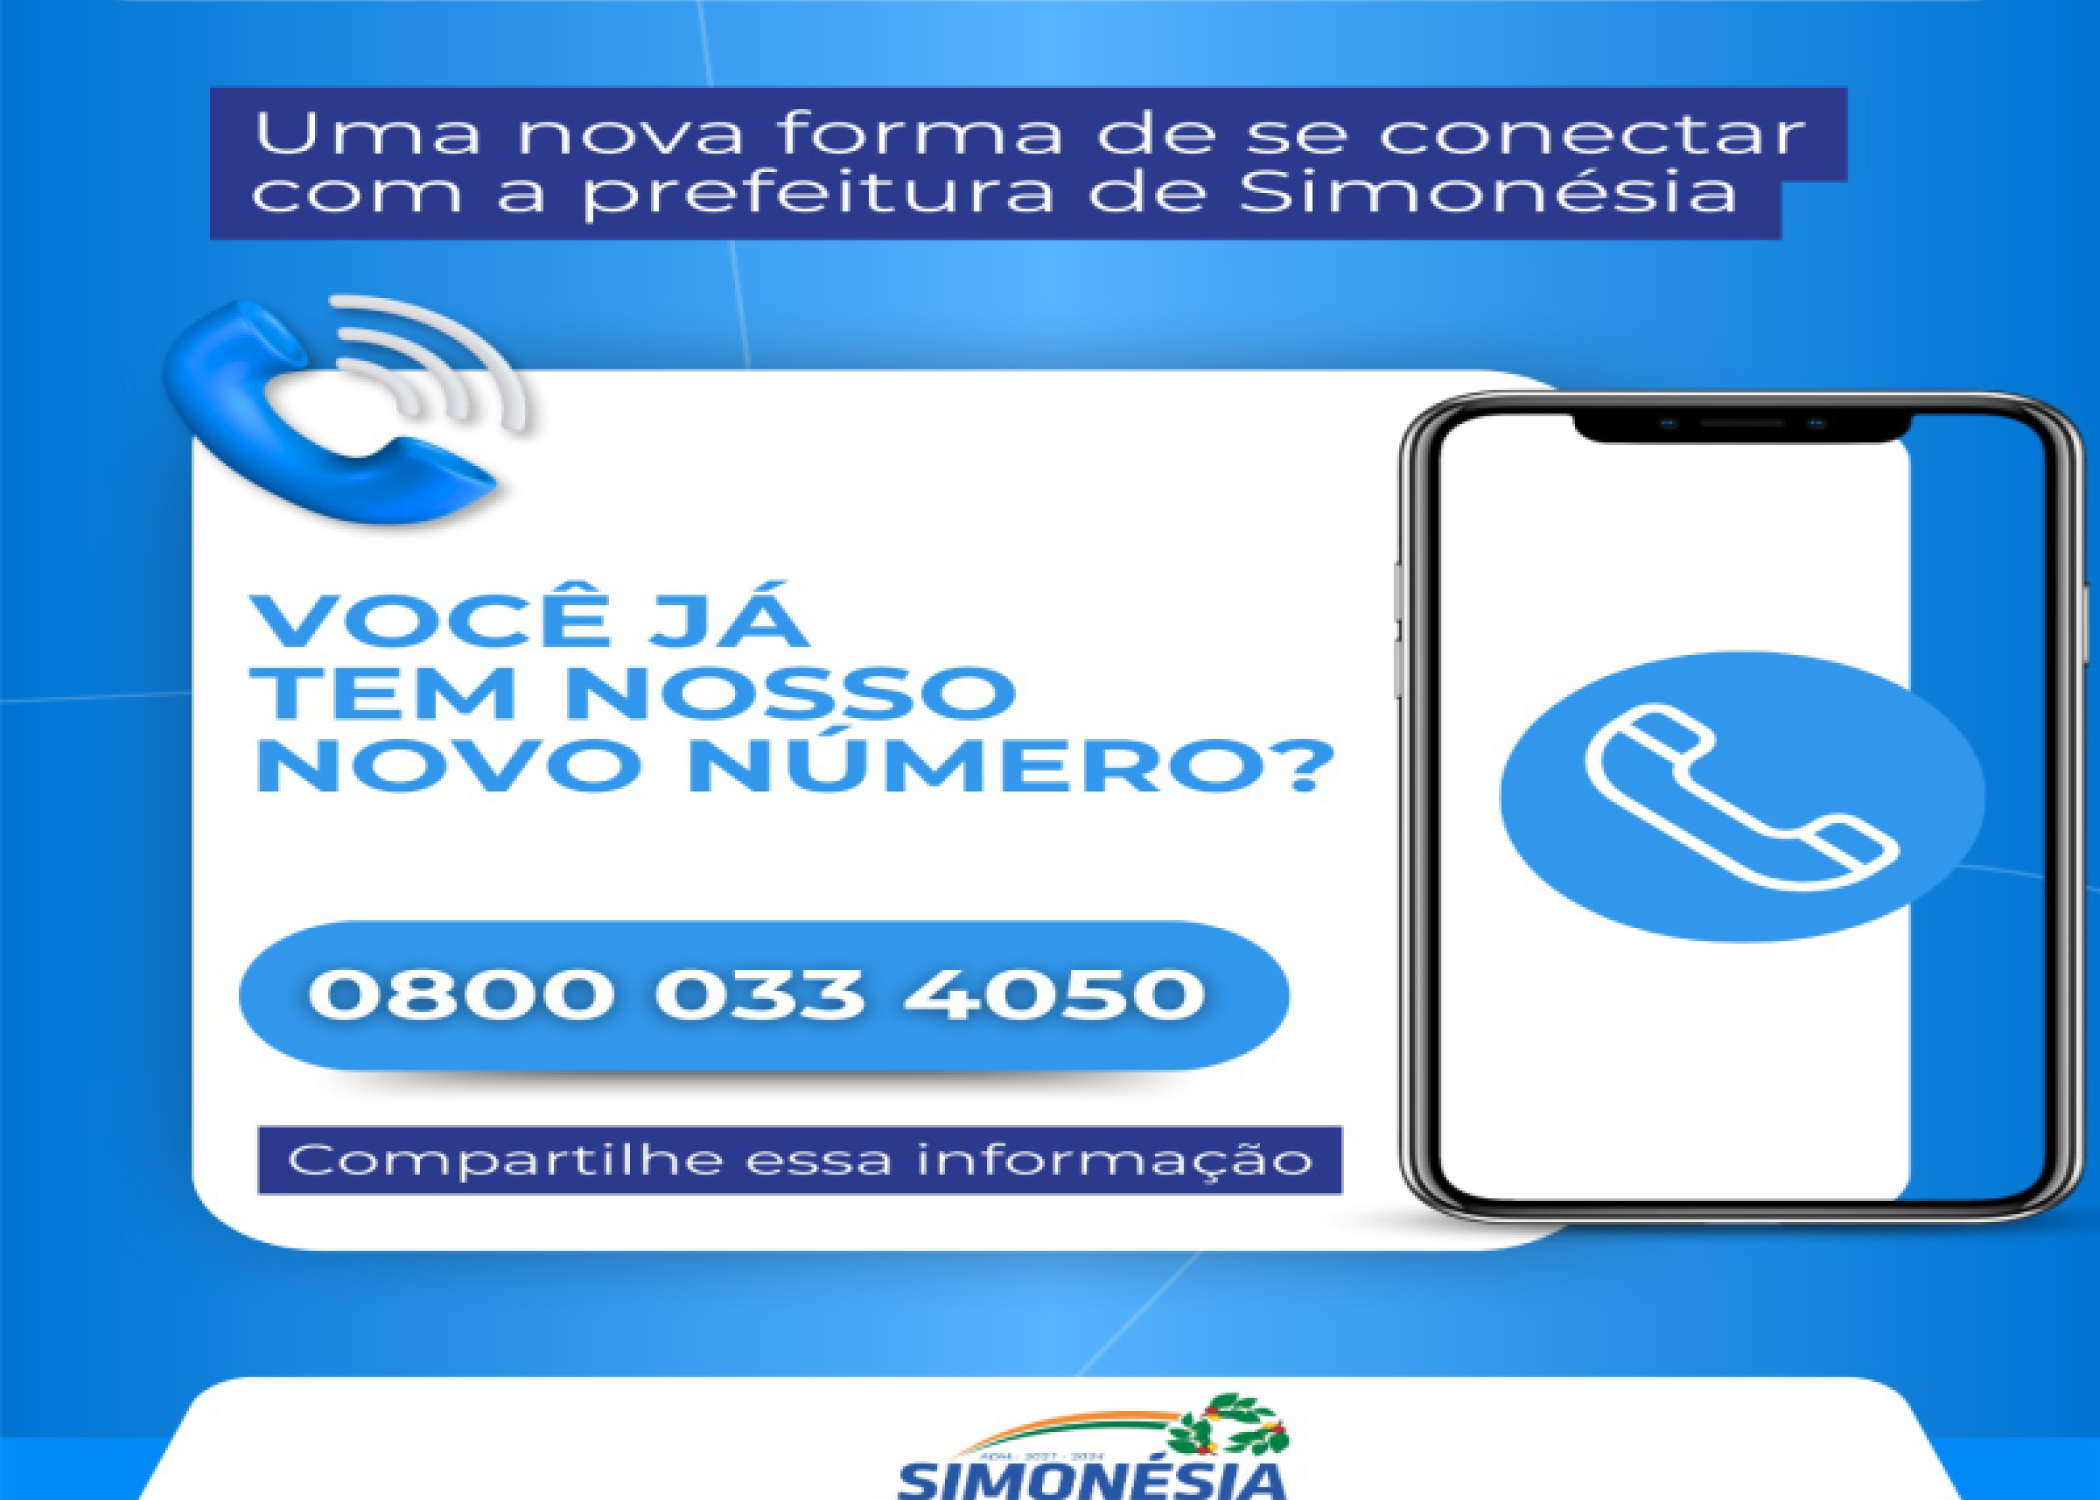 Novo número gratuito da Prefeitura de Simonésia: 0800 033 4050